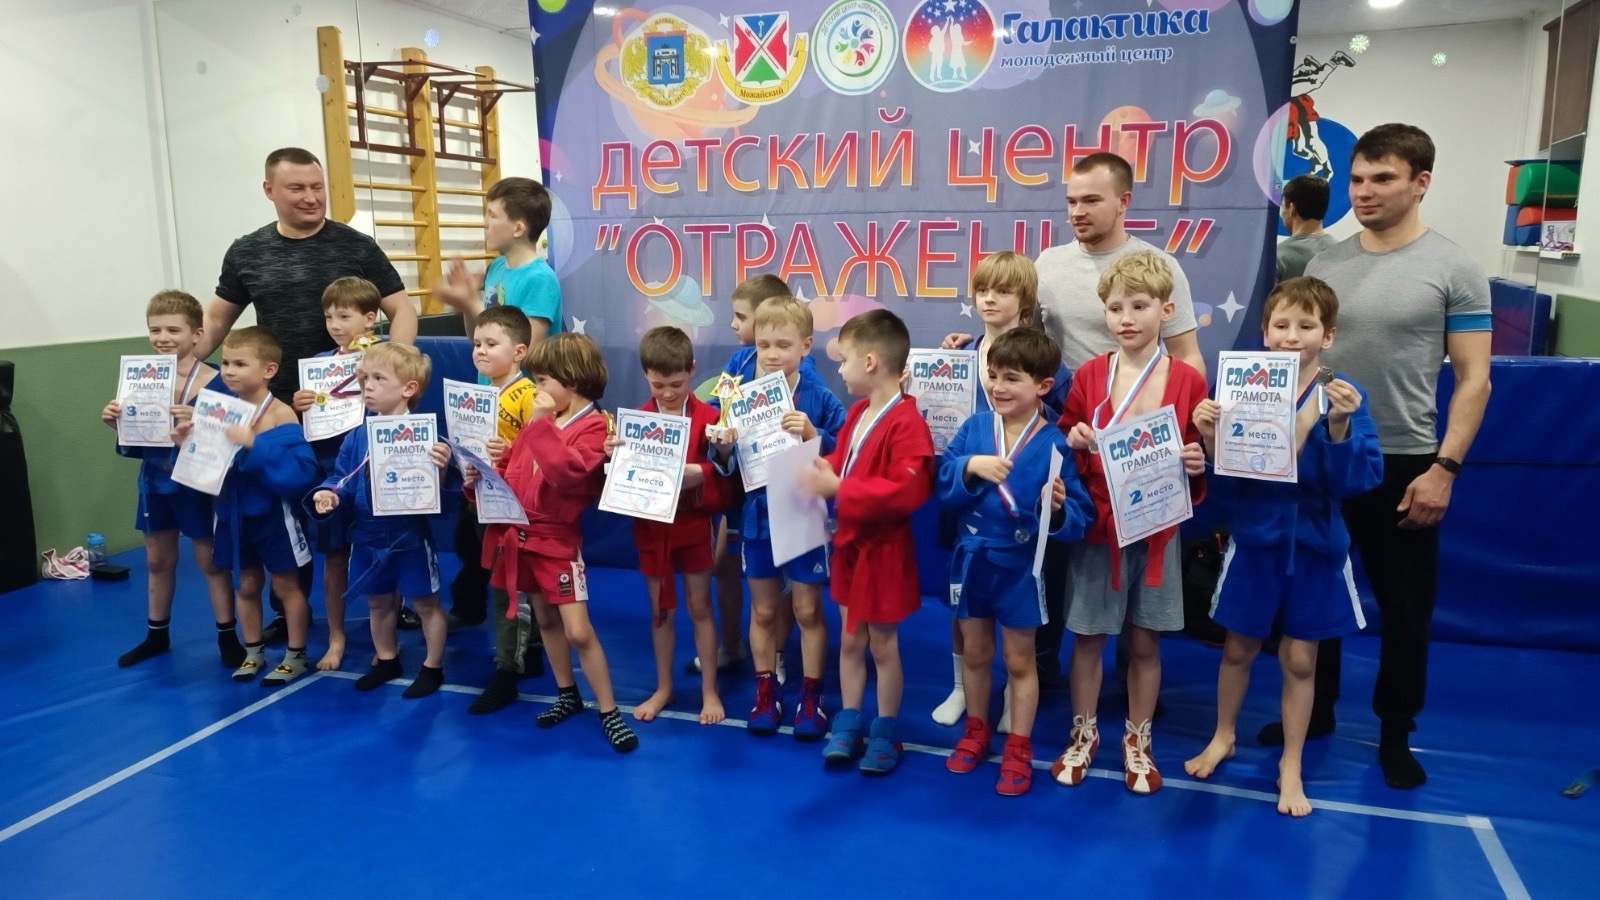 Филиал «Детский центр «Отражение» провел турнир по самбо.